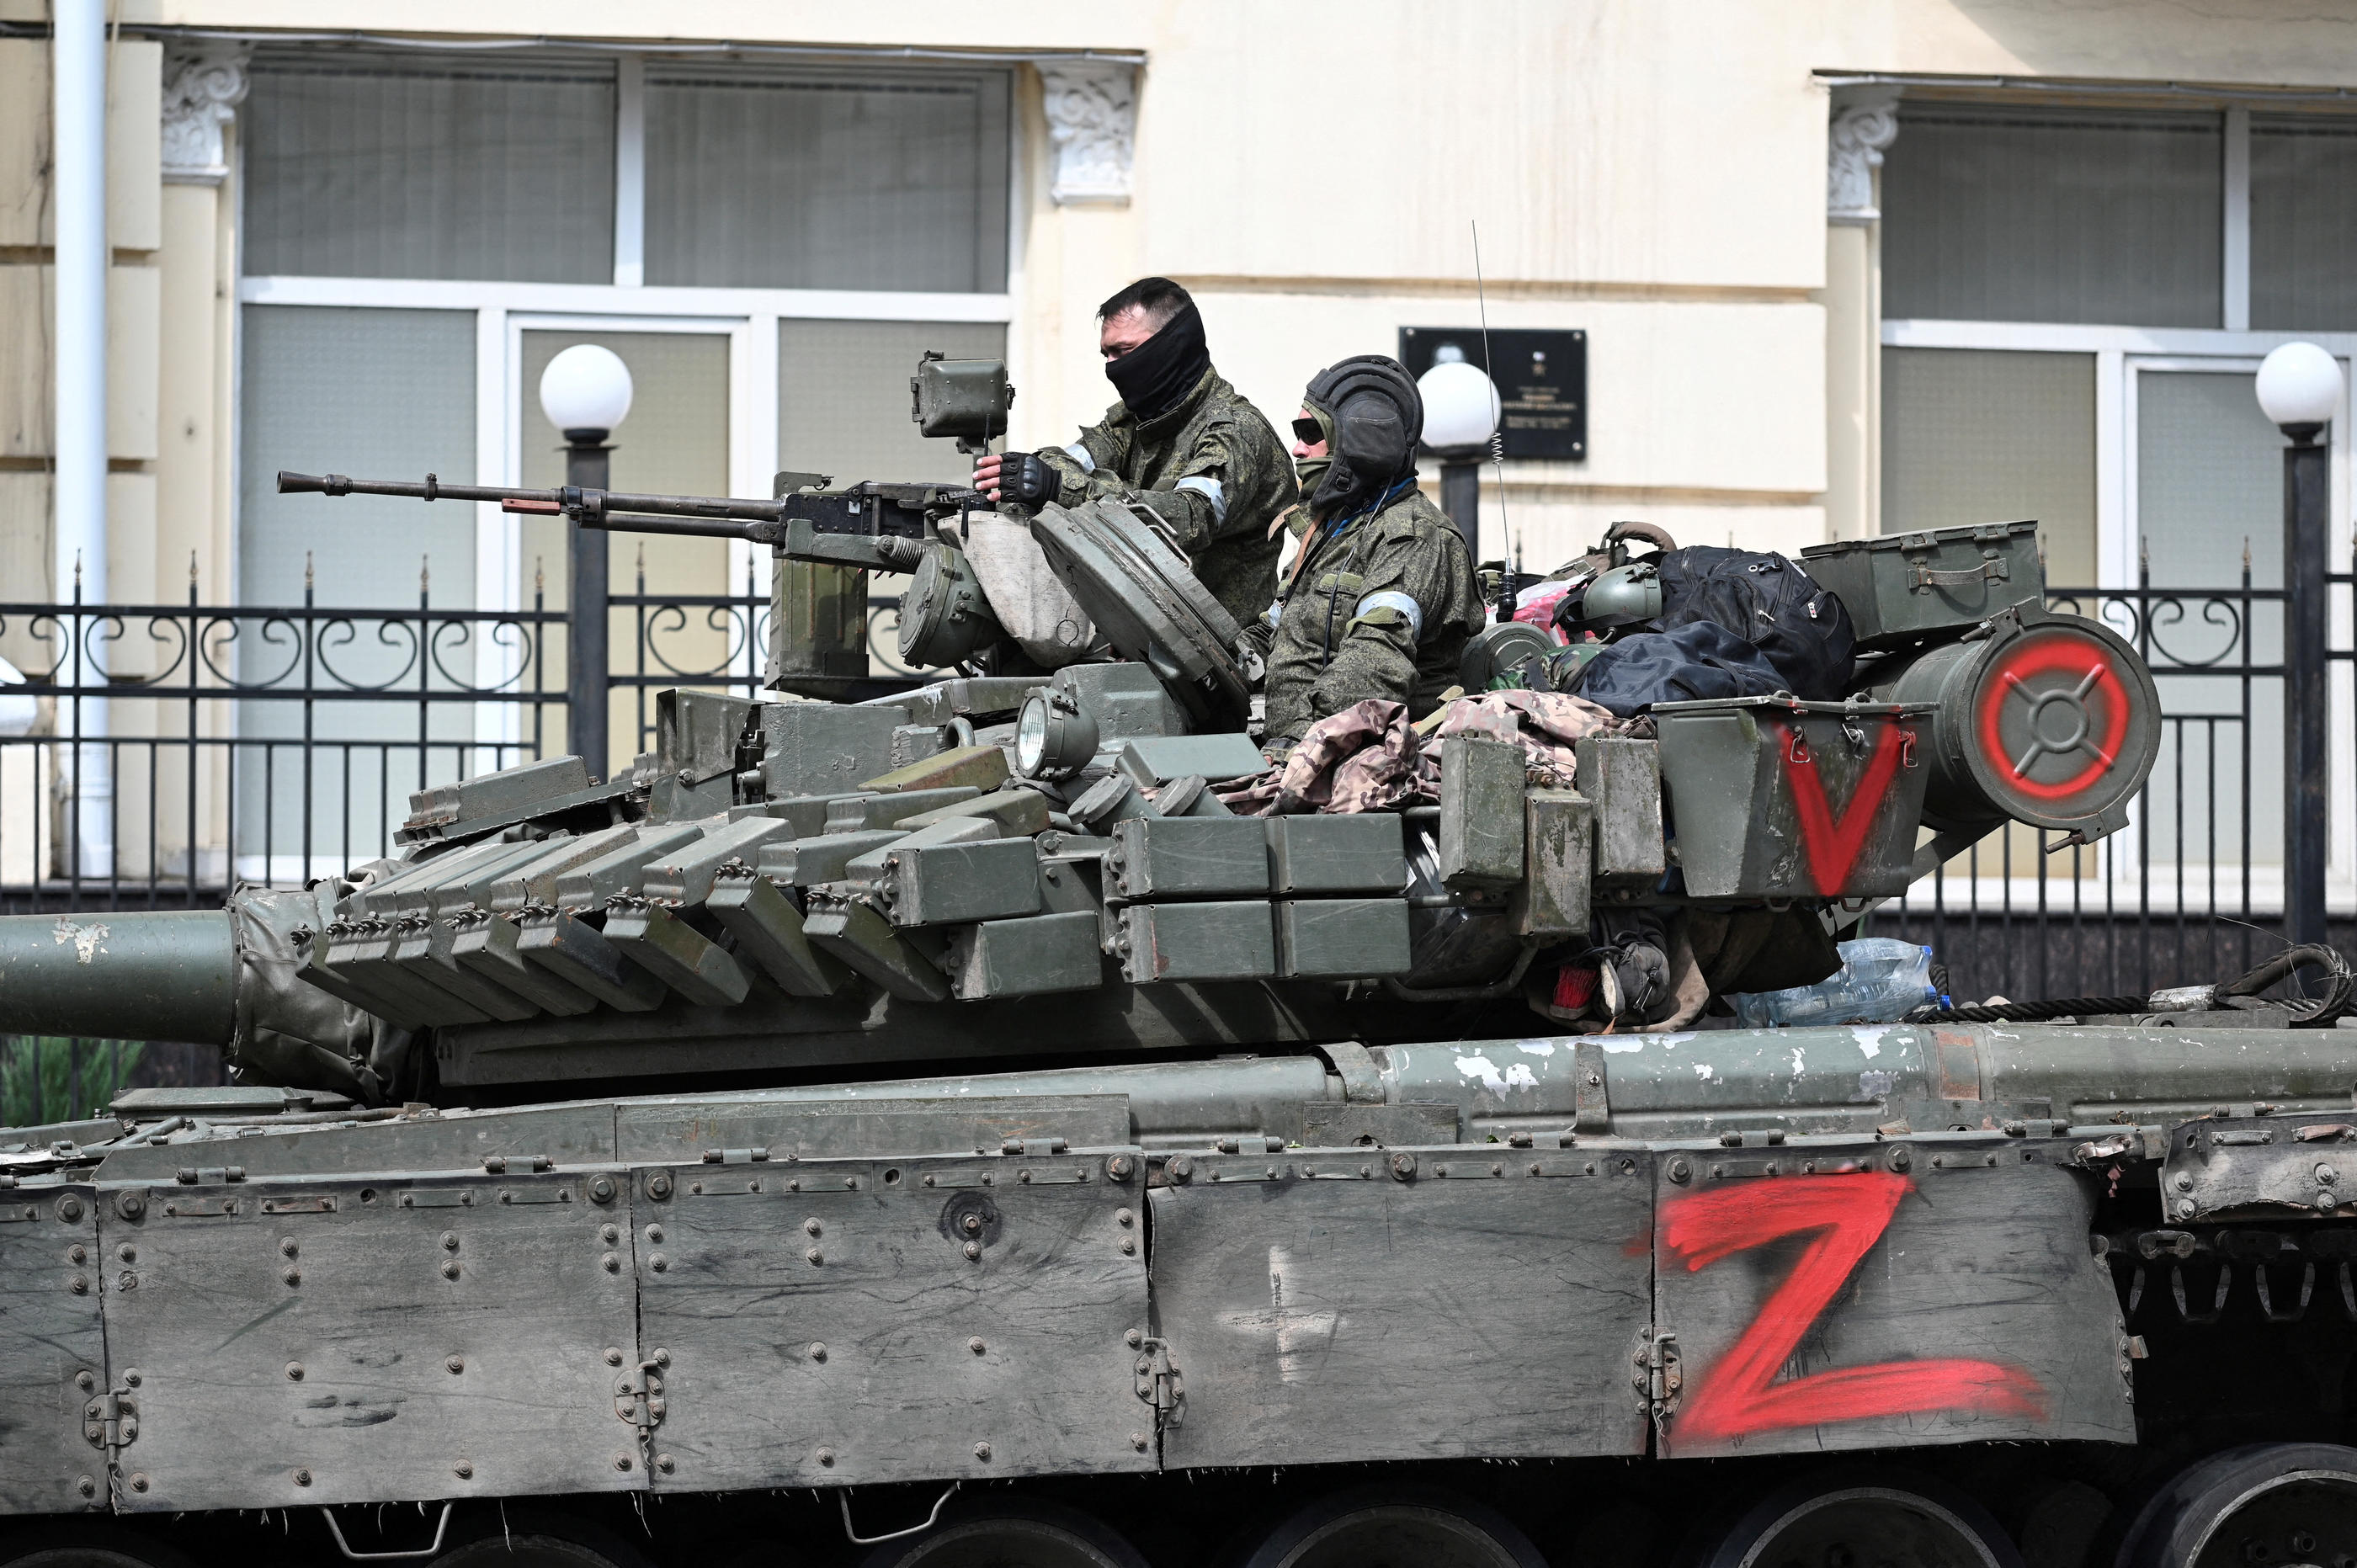 Des combattants du groupe mercenaire privé Wagner sur un tank, dans une rue près du siège du QG militaire russe dans la ville de Rostov-sur-le-Don, en Russie, le 24 juin 2023. REUTERS/Stringer